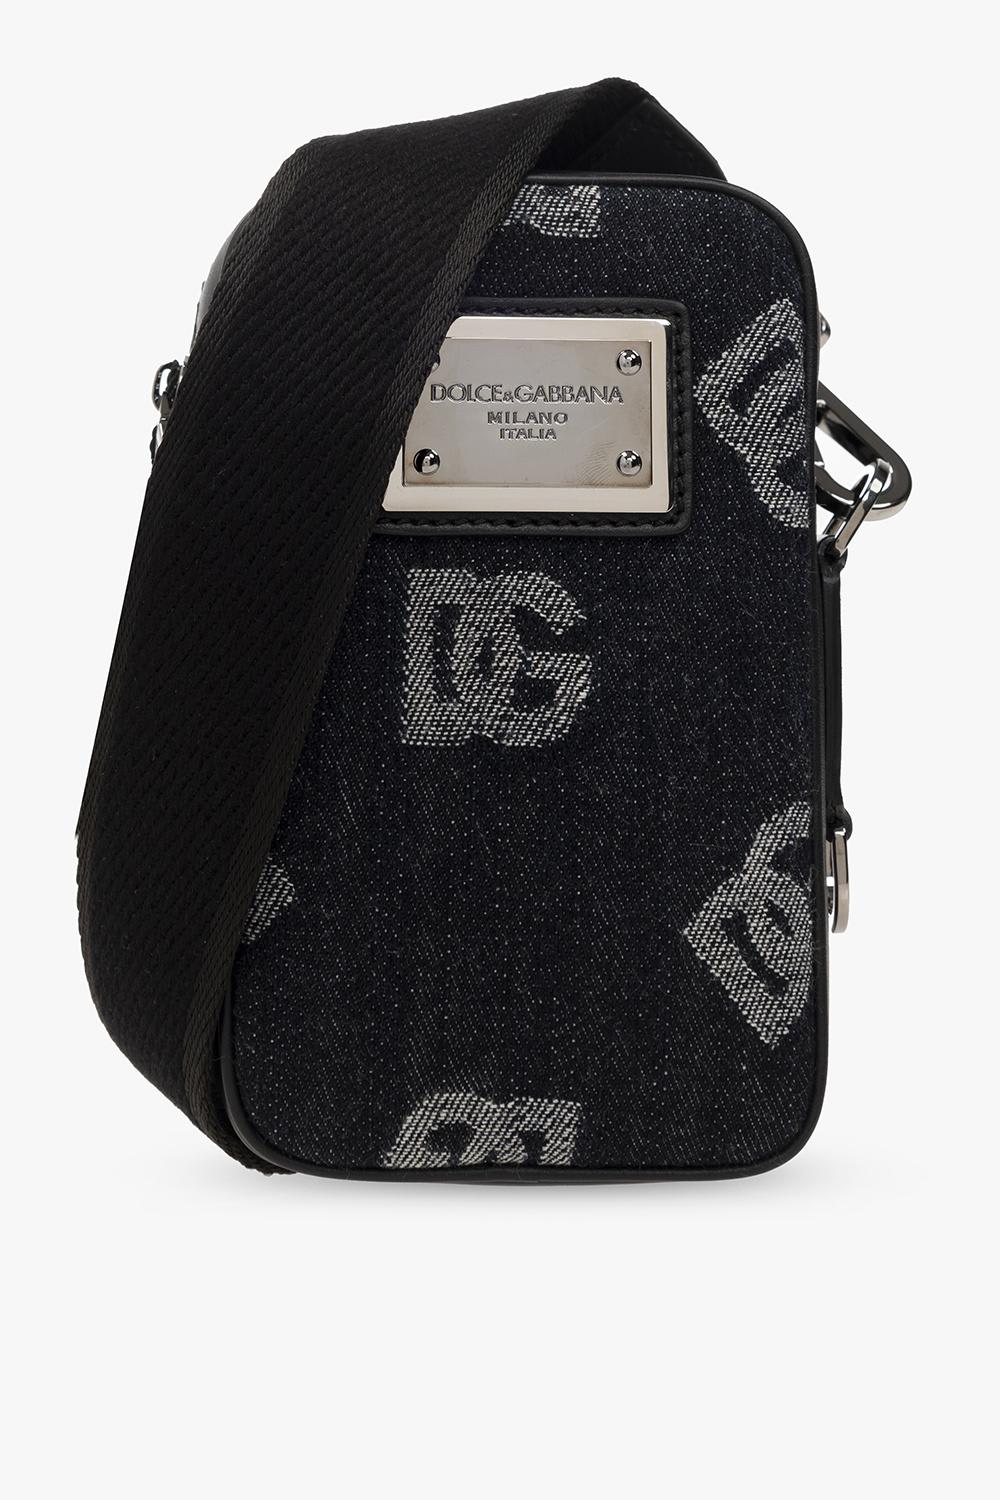 Dolce & Gabbana Monogrammed Shoulder Bag